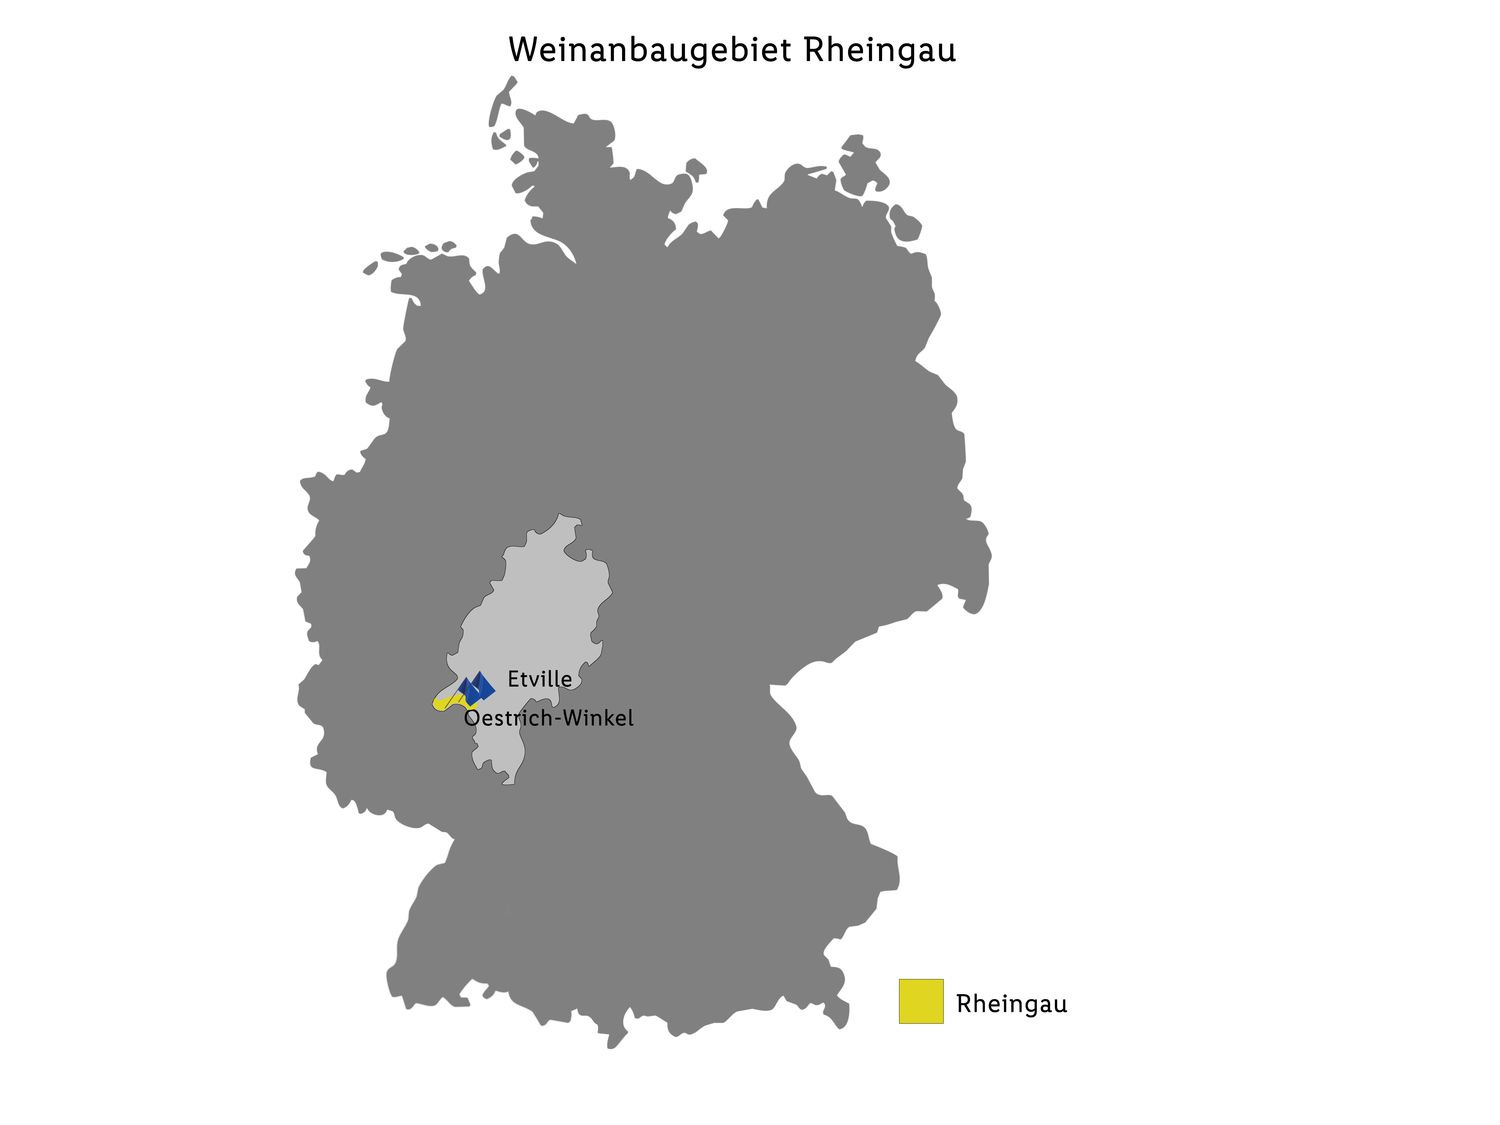 Rheingau Riesling QbA trocken, Weißwein 2022 | LIDL